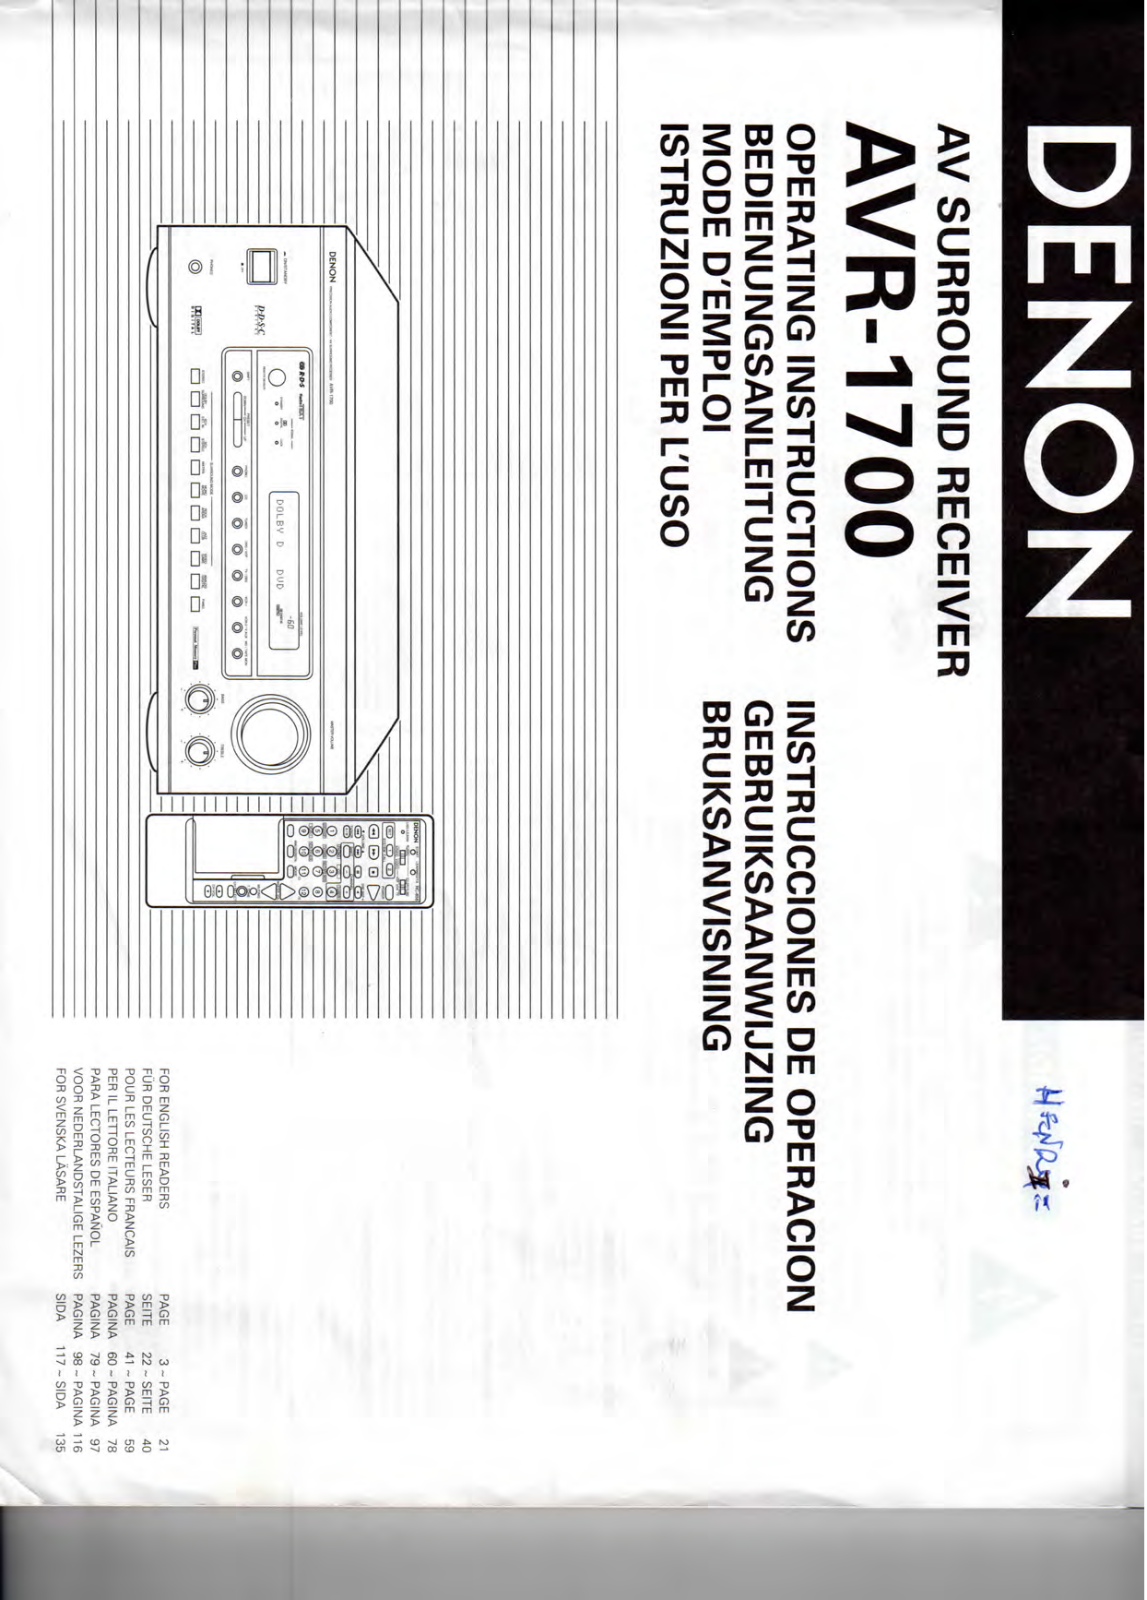 DENON AVR-1700 User Manual